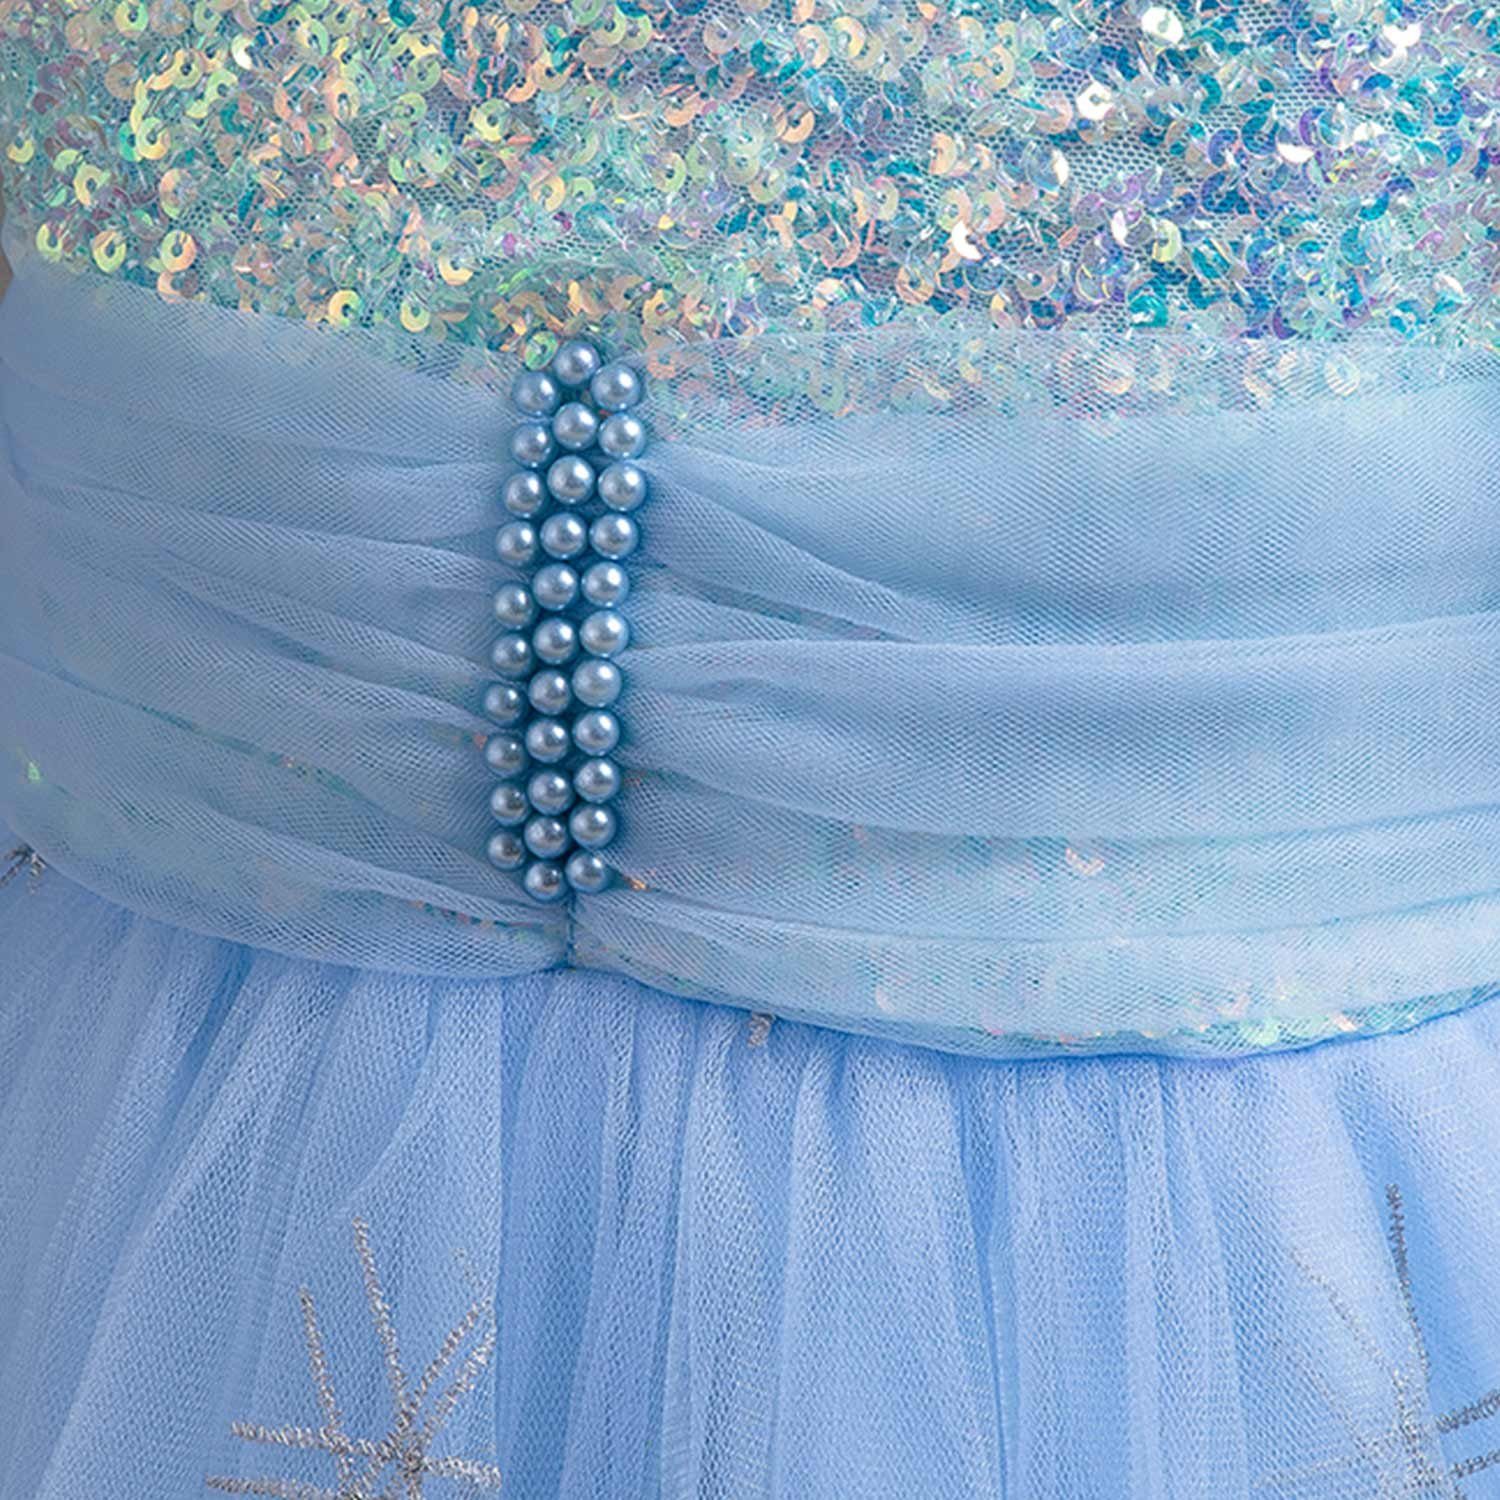 Daisred Abendkleid Blau Prinzessinnenkleider Geburtstagsparty Mädchen Tüllkleider